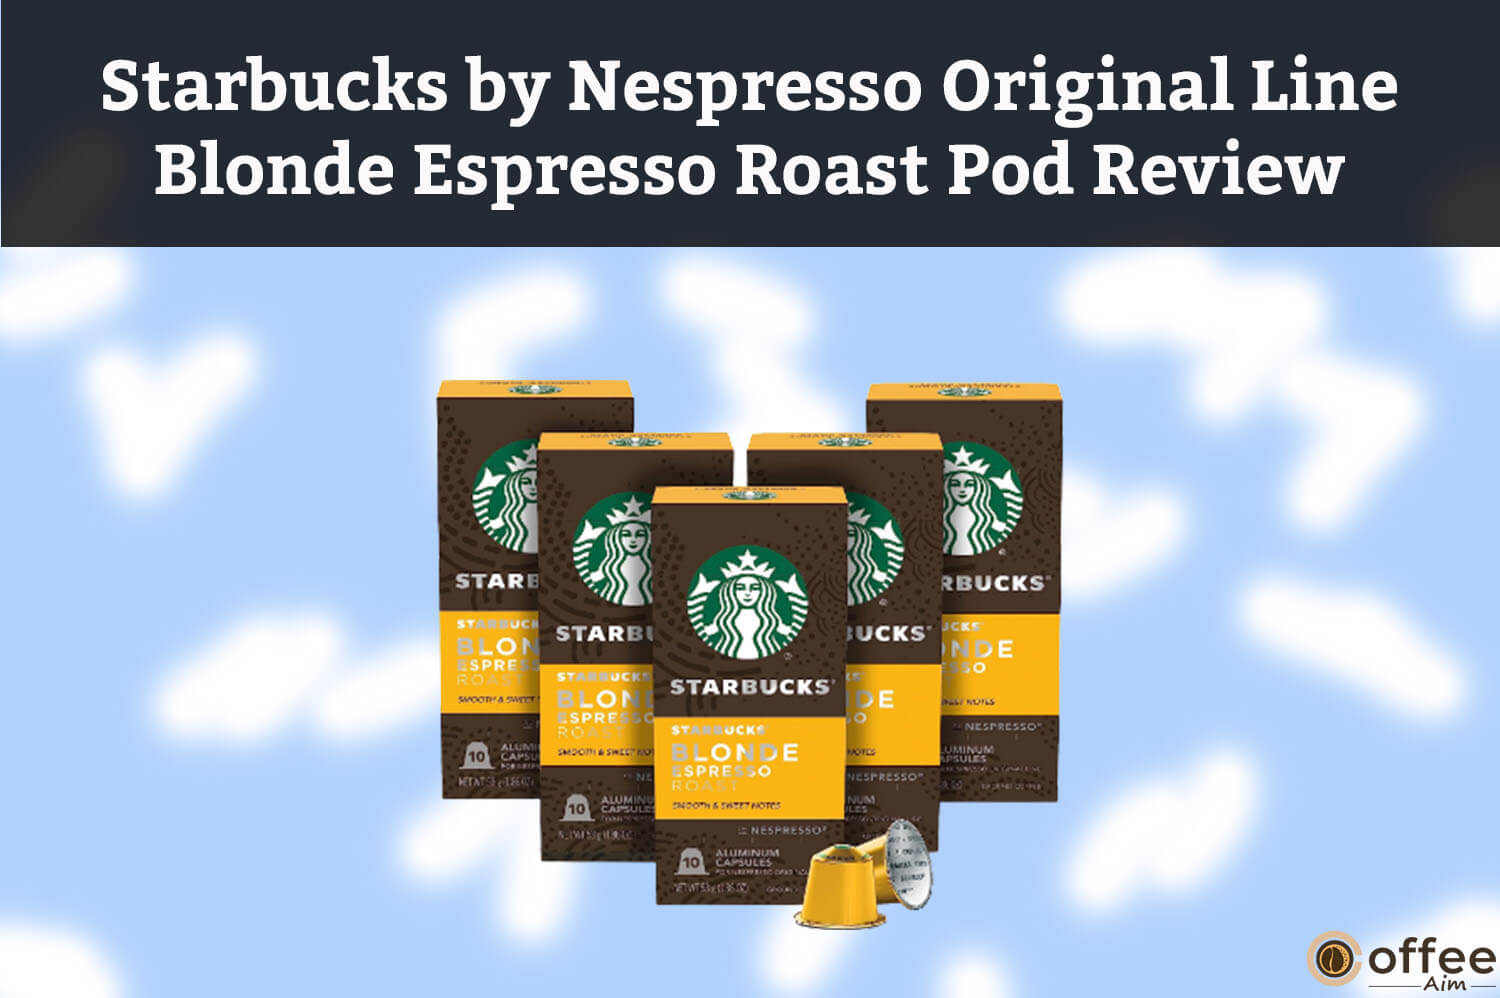 Starbucks by Nespresso Original Line Blonde Espresso Roast Pod Review